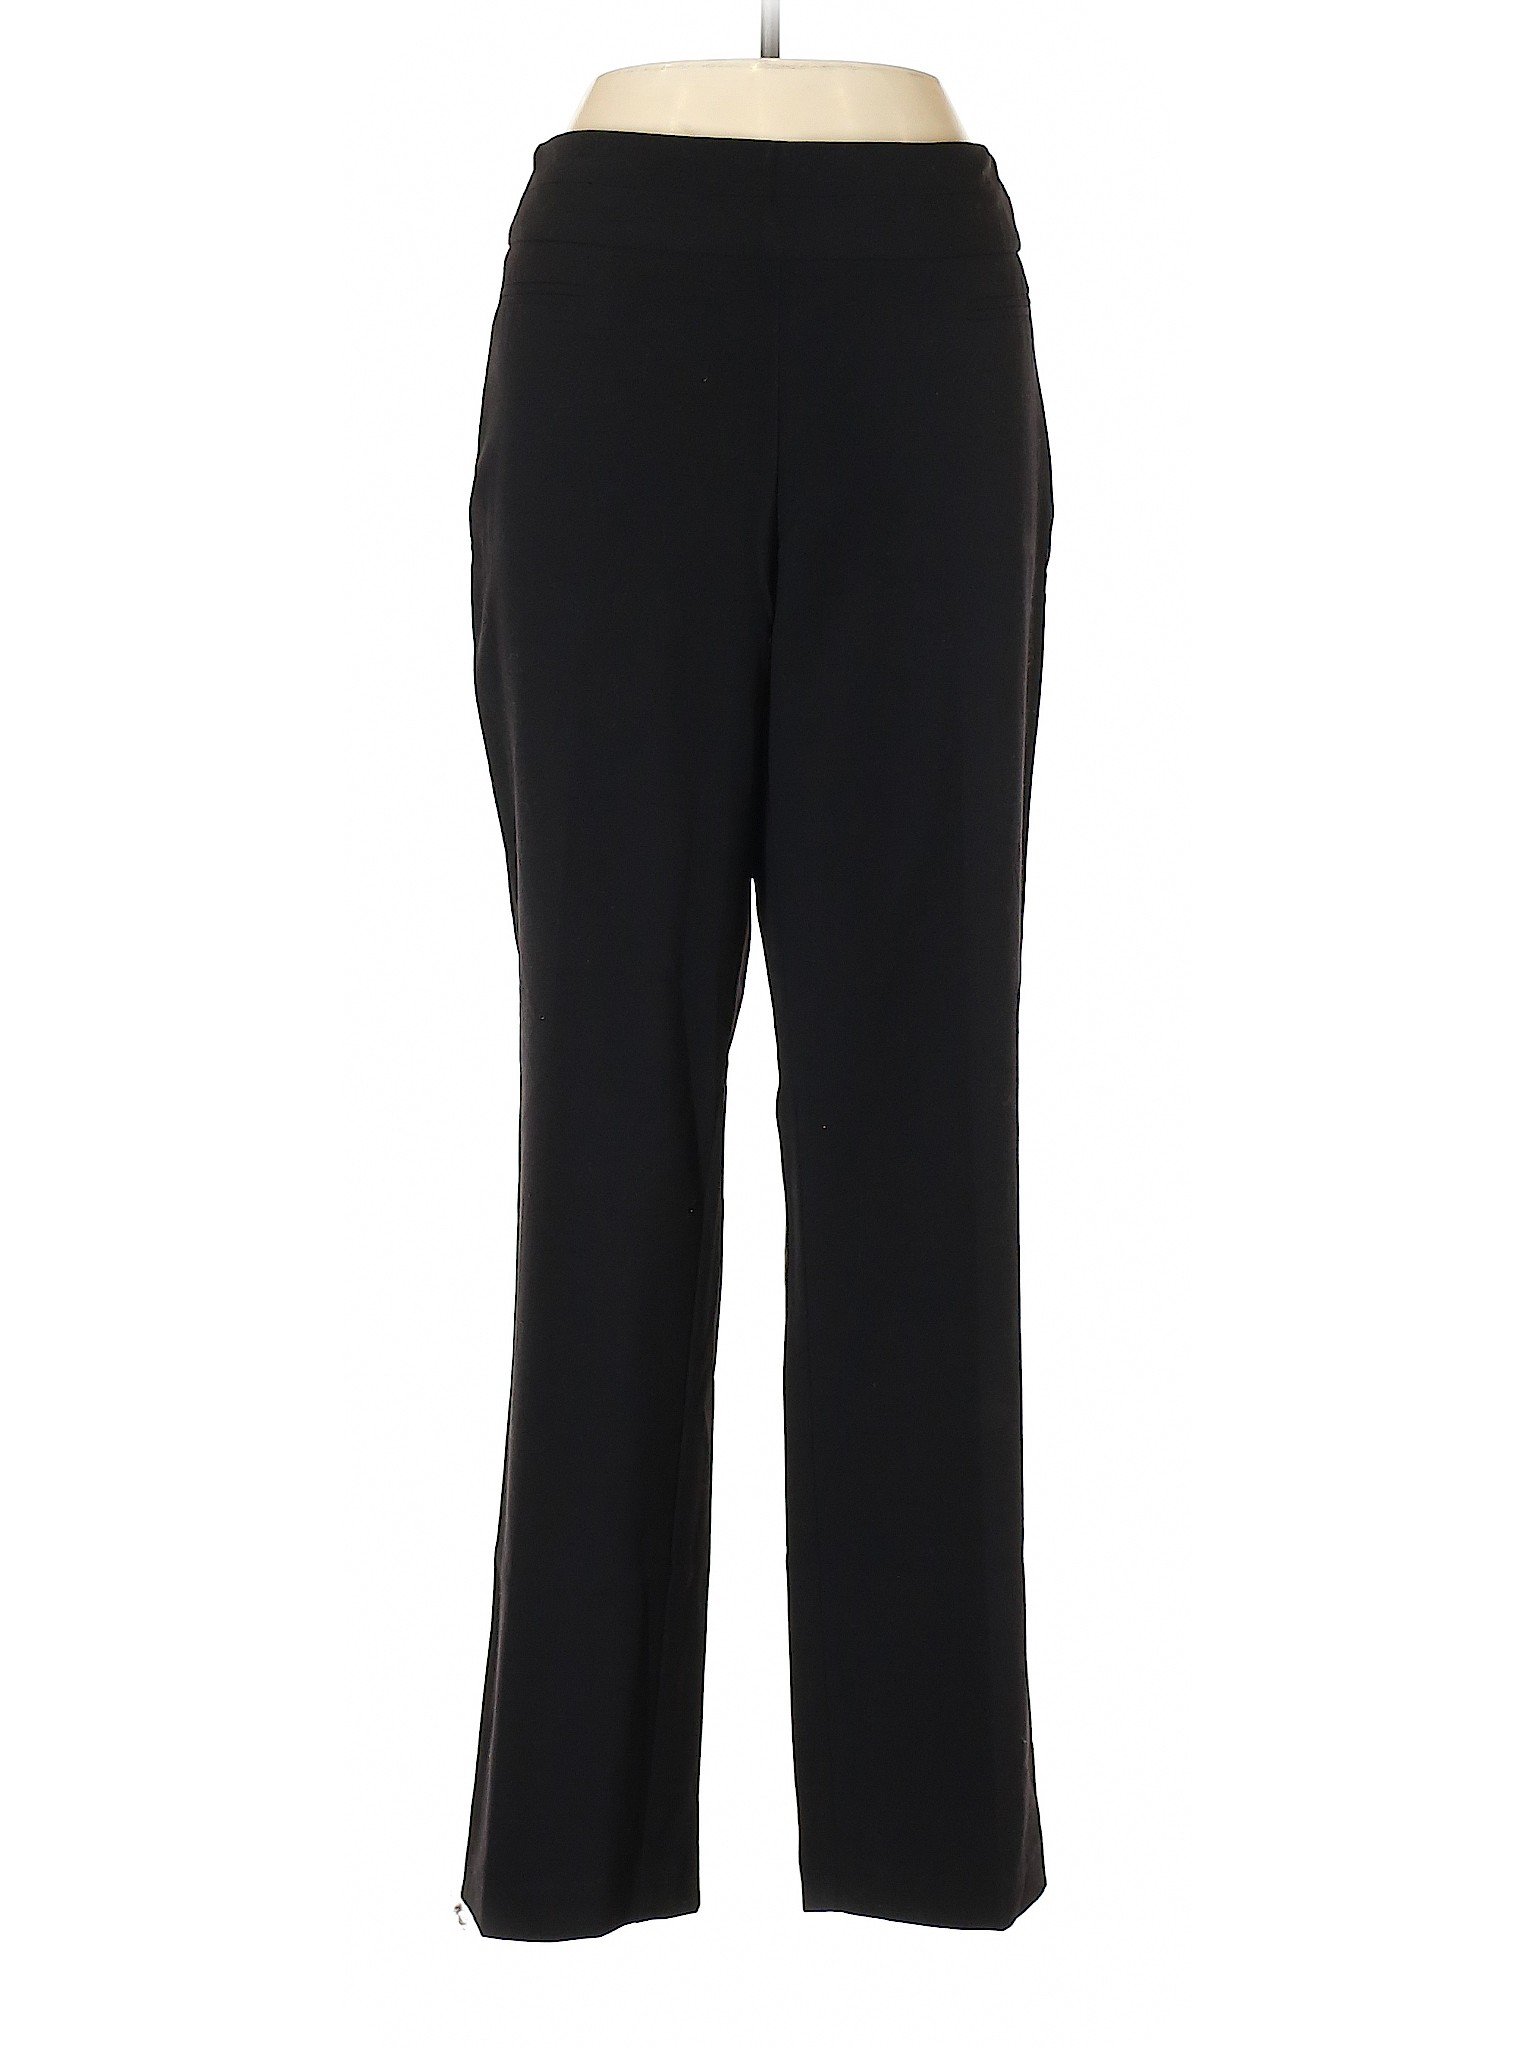 Roz & Ali Women Black Dress Pants 10 | eBay